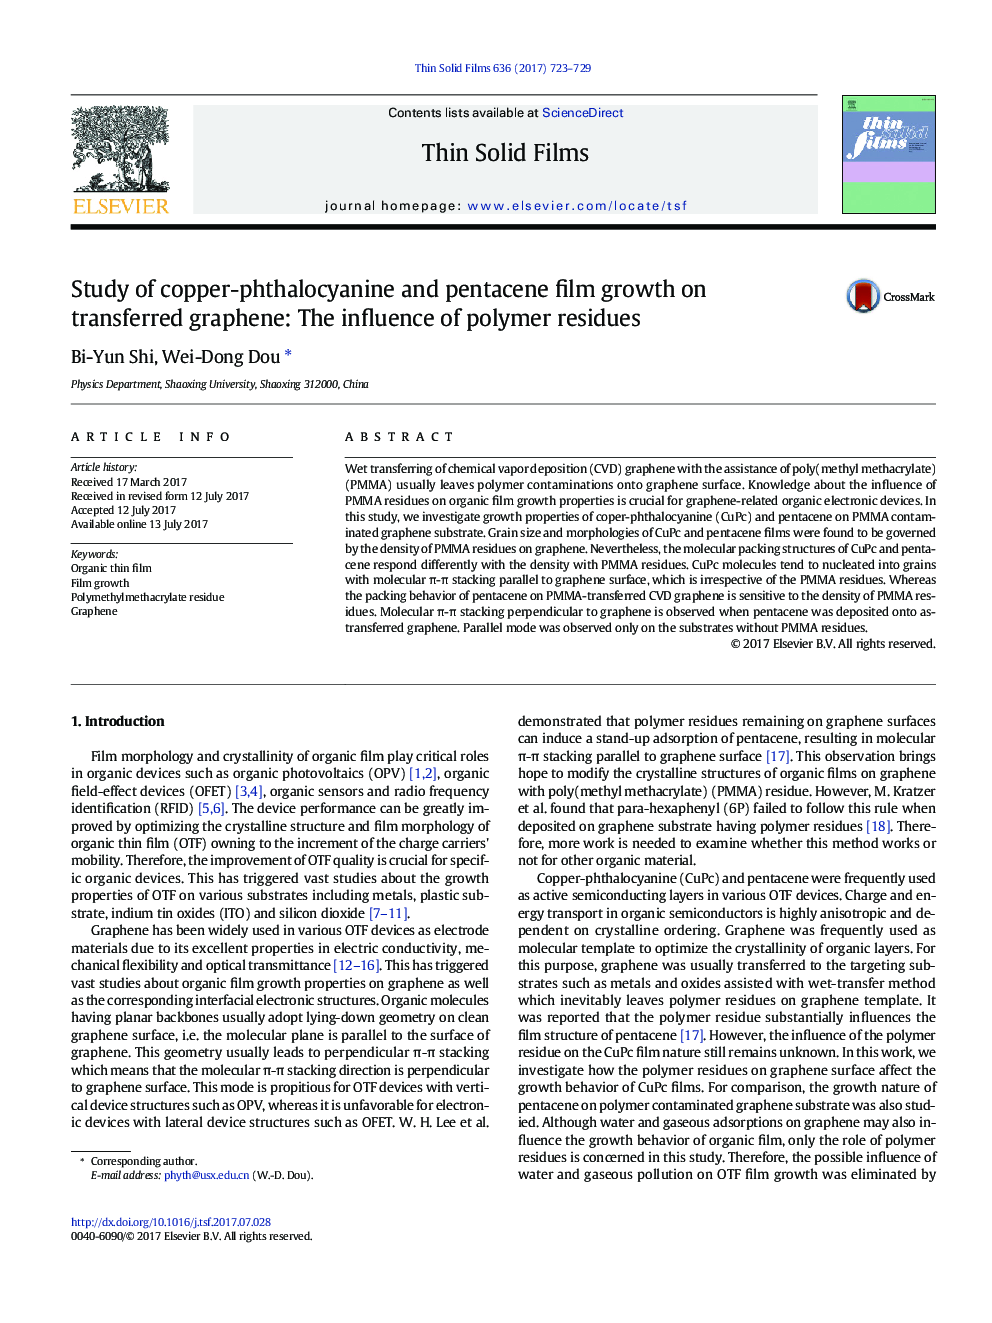 مطالعه فلوئور مس-فتالوسیانین و رشد پنتاآن بر گرافن منتقل شده: تأثیر بقایای پلیمری 